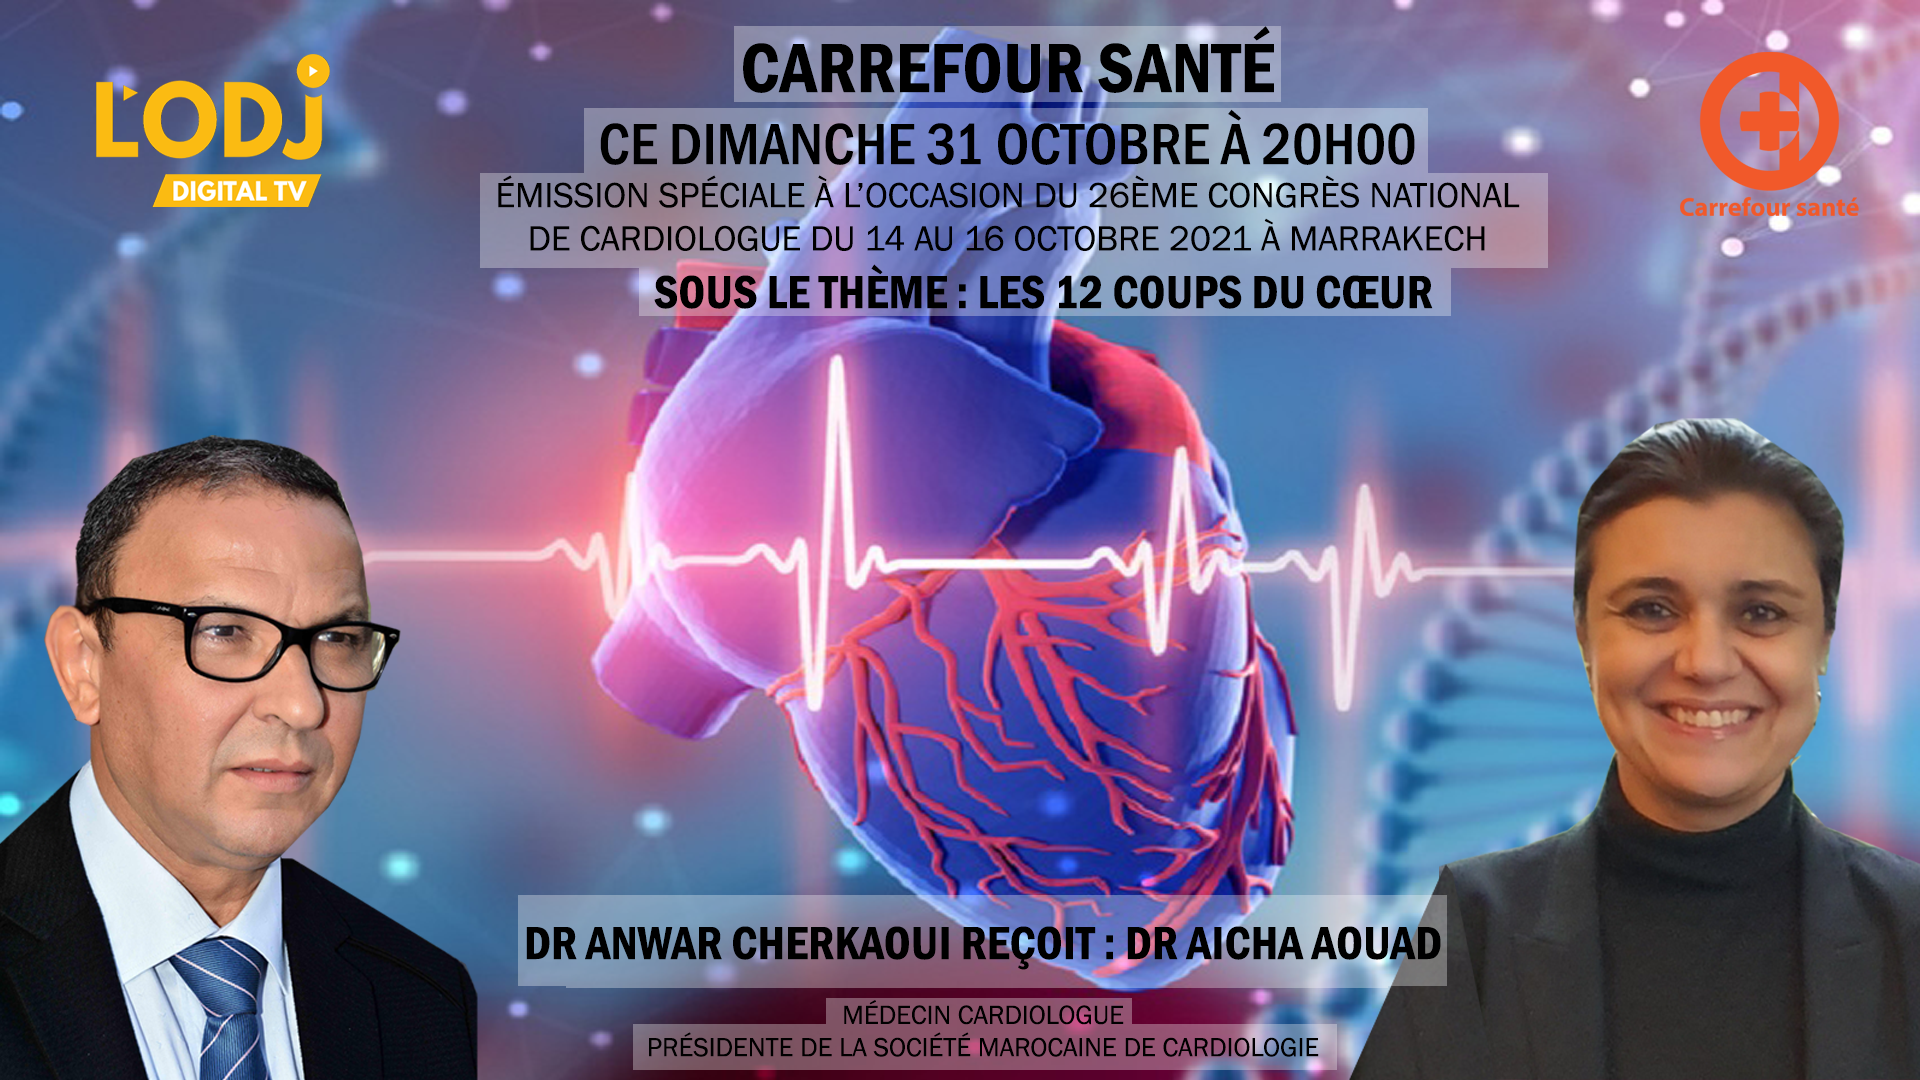 Carrefour Santé reçoit Dr Aicha Aouad